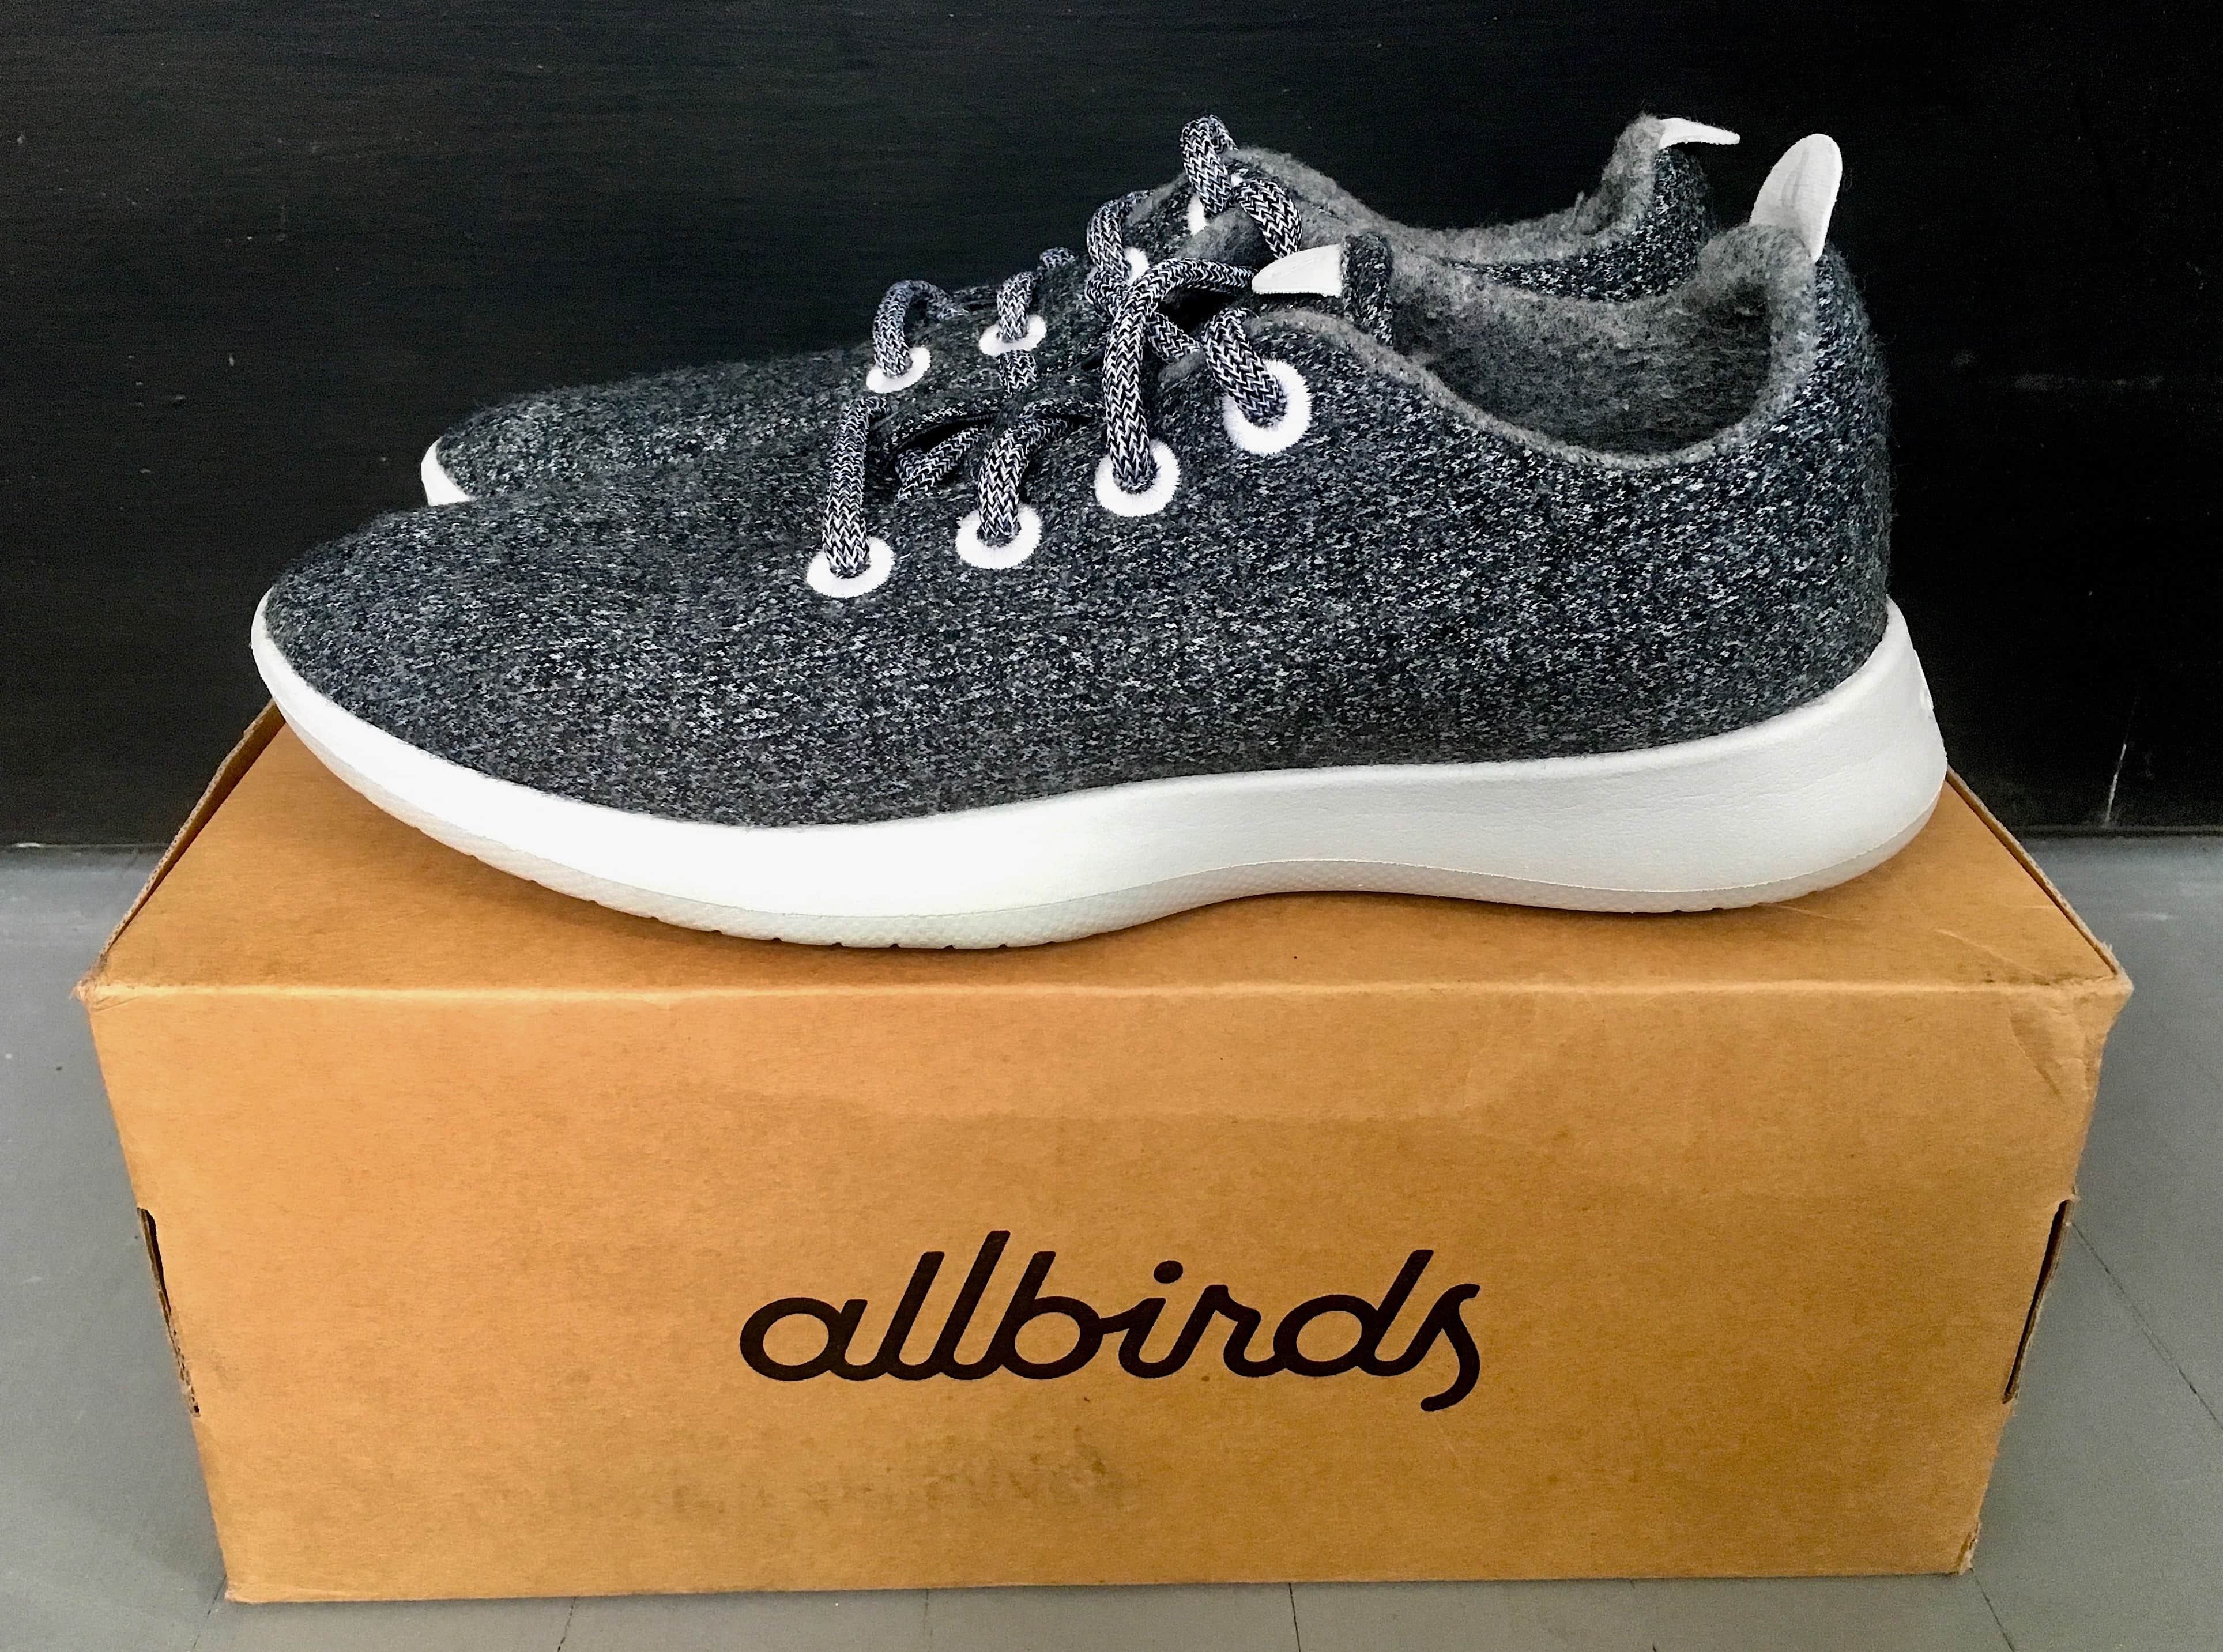 allbirds men's merino wool sneakers